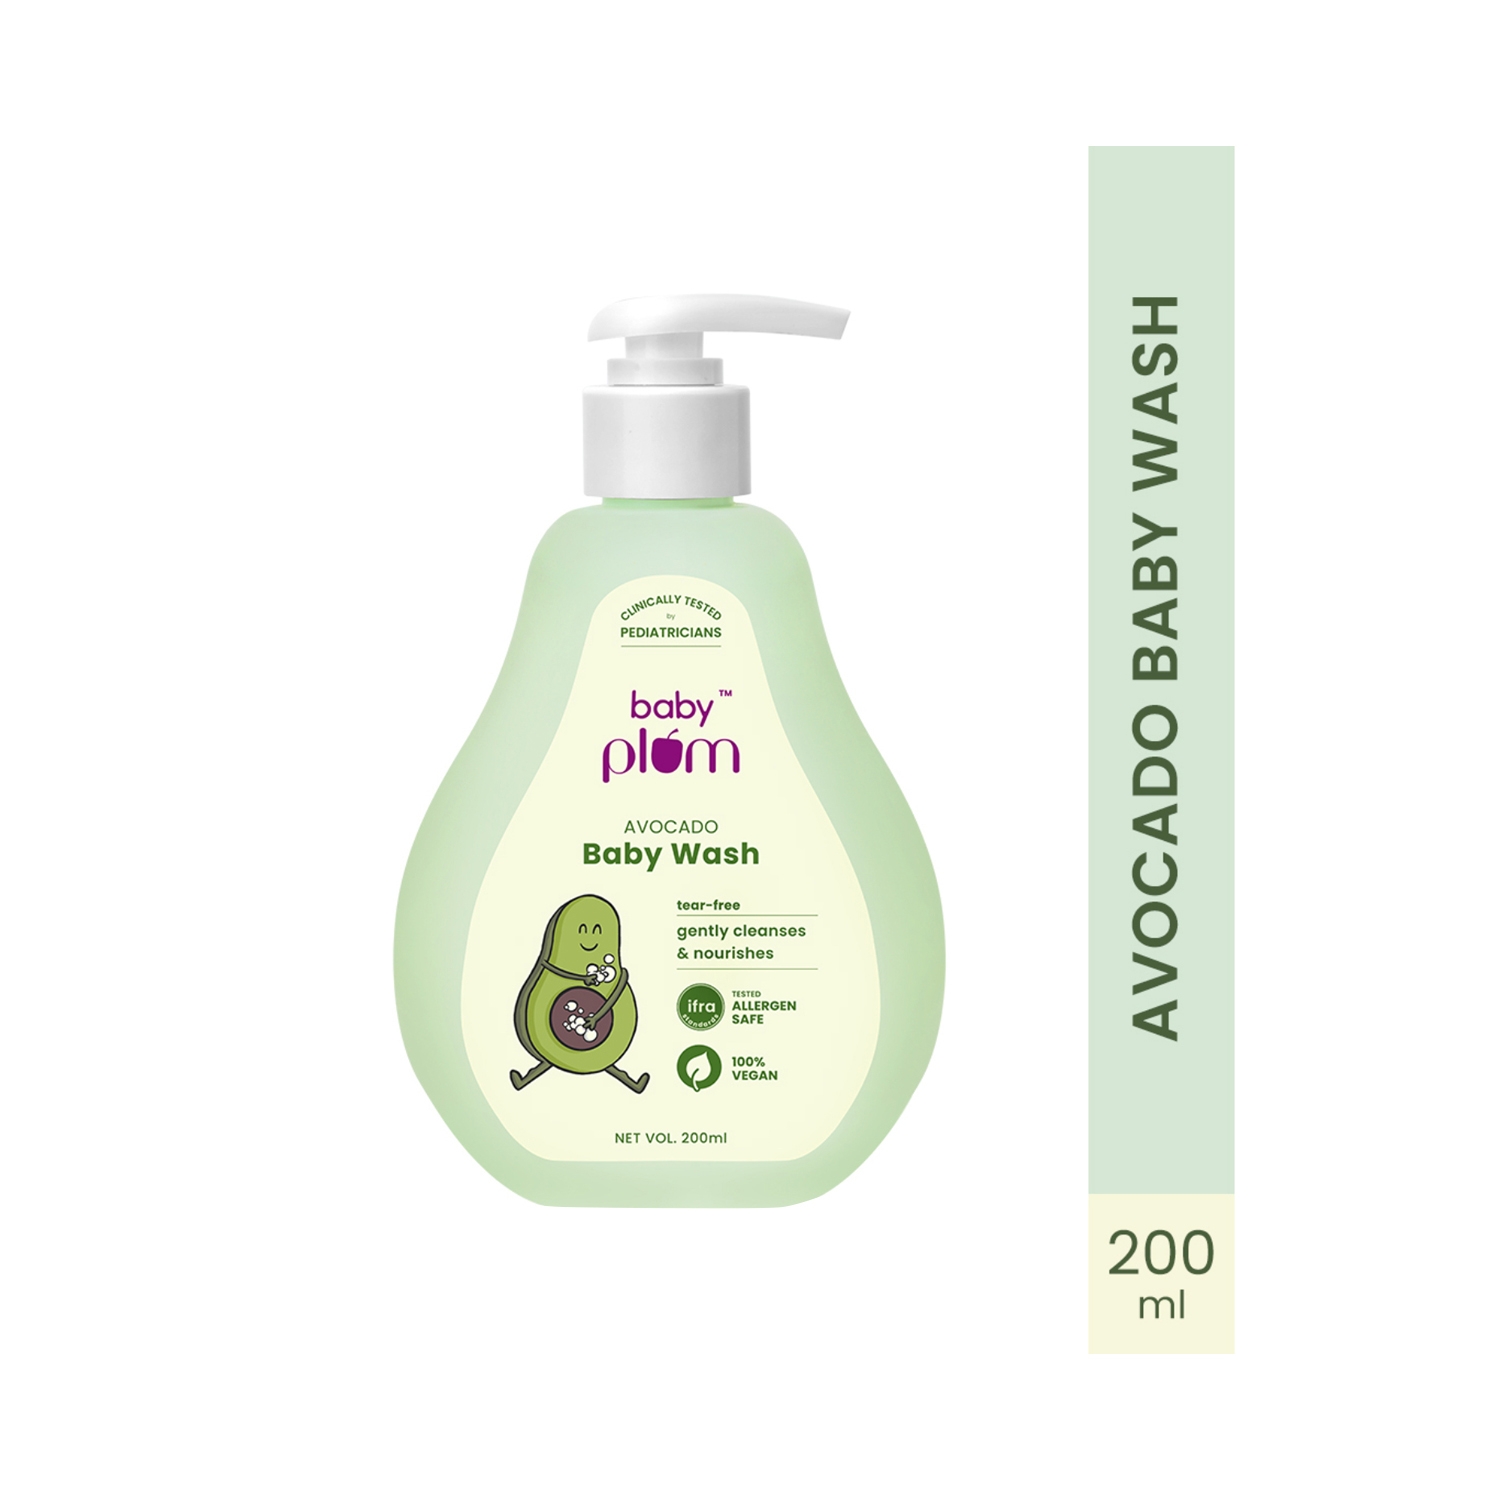 Plum | Baby Plum Avocado Baby Wash (200ml)